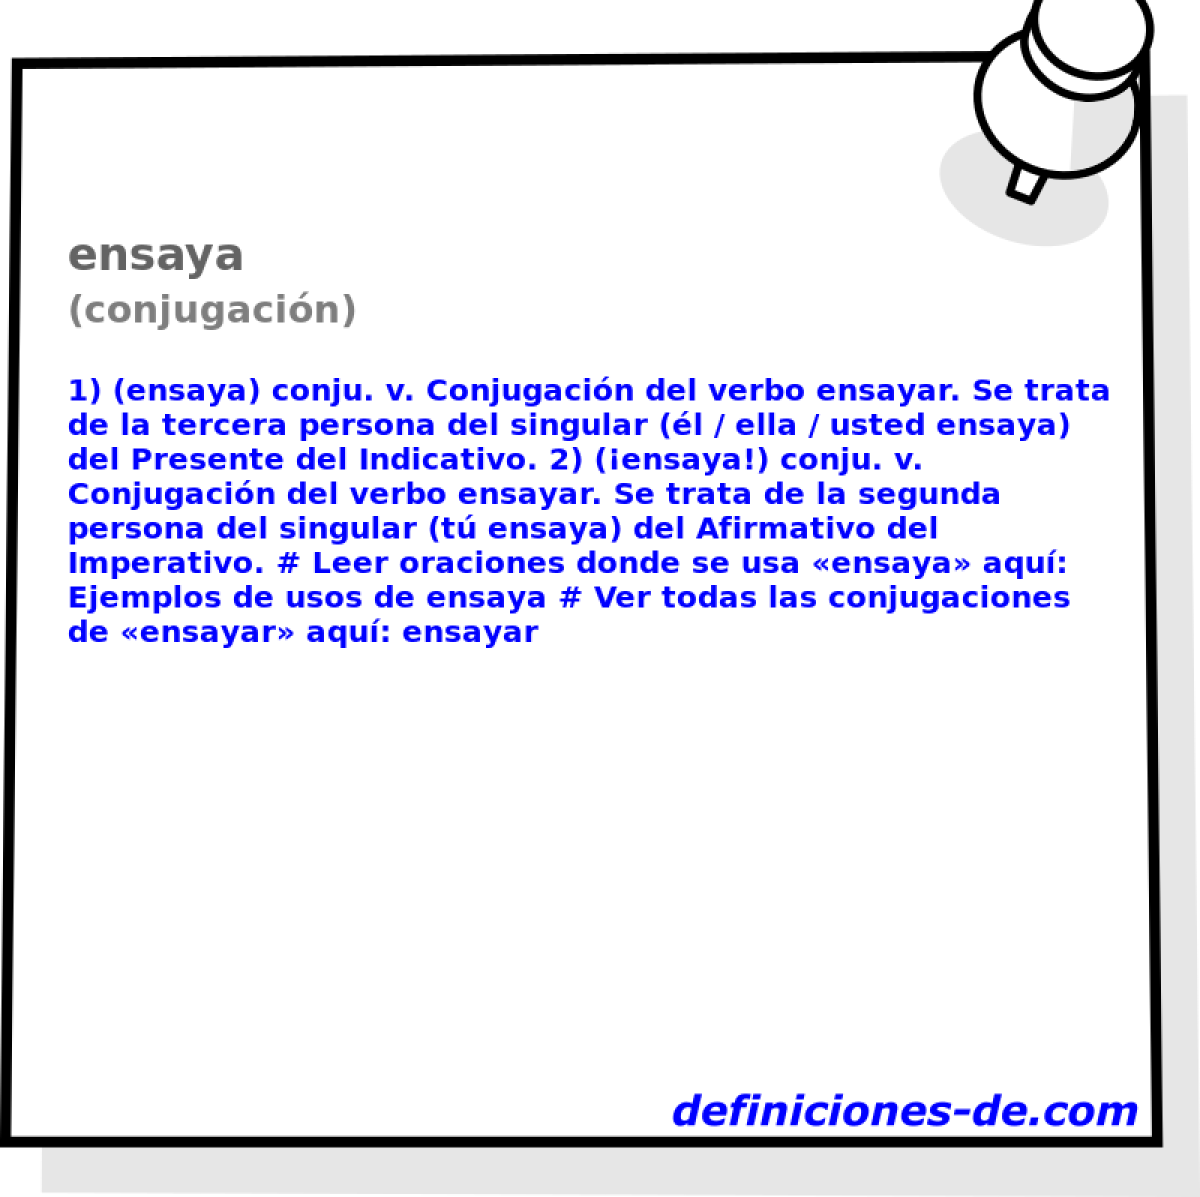 ensaya (conjugacin)